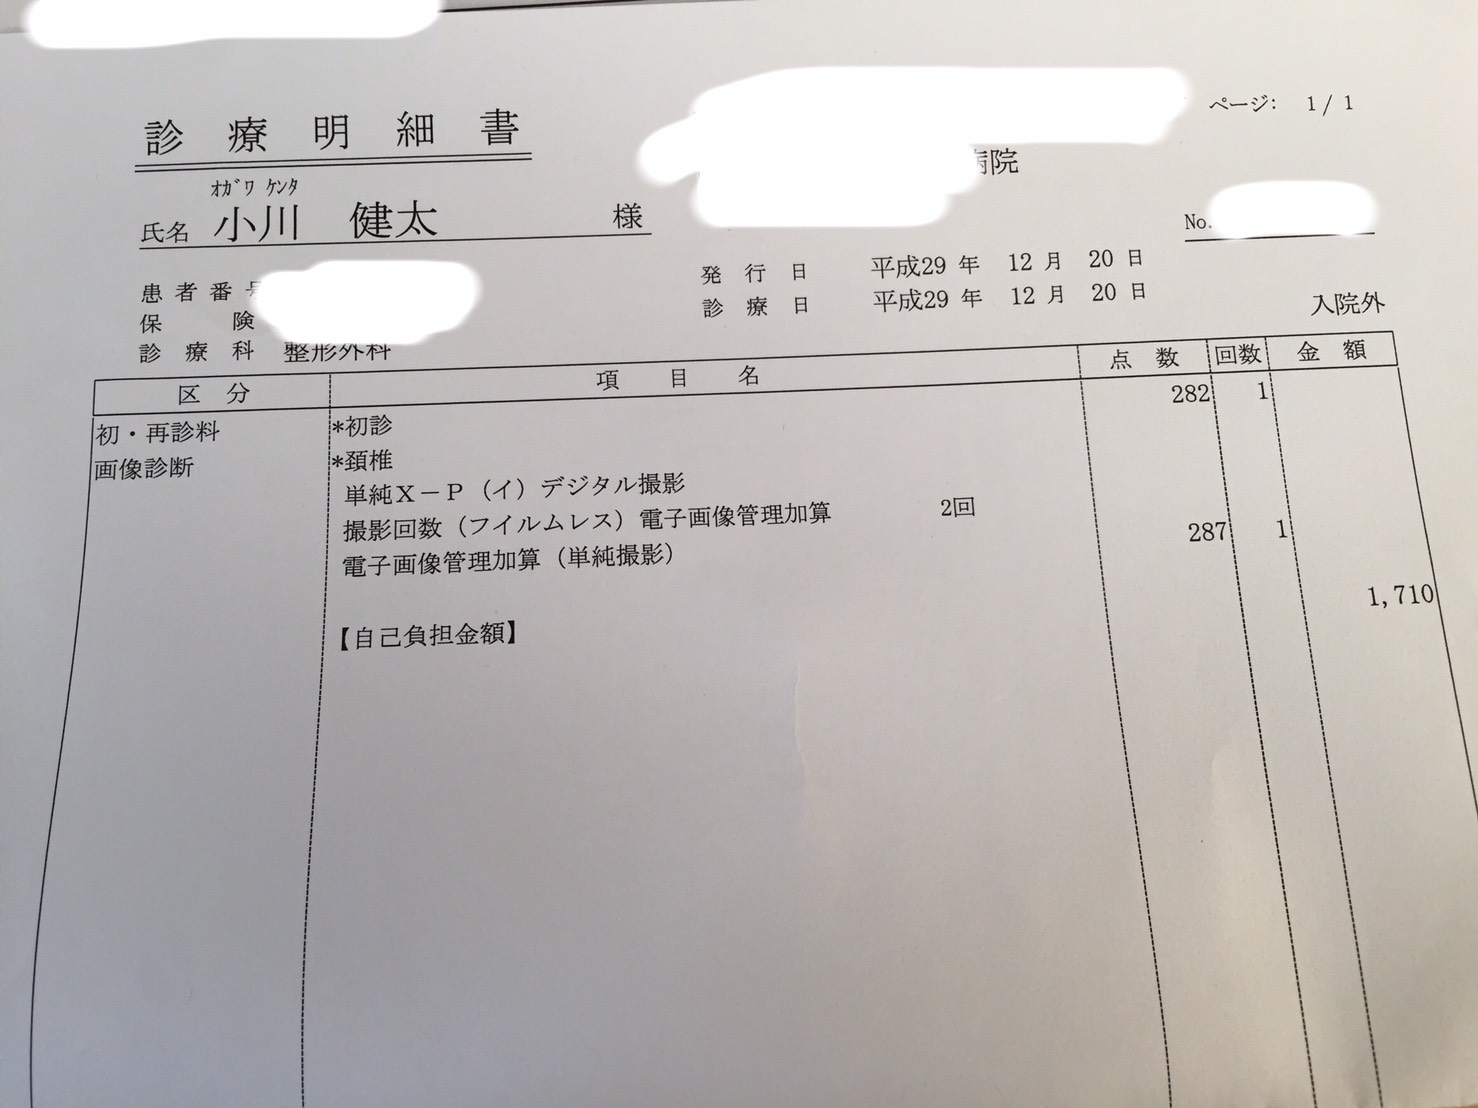 受診料は1,710円でした。